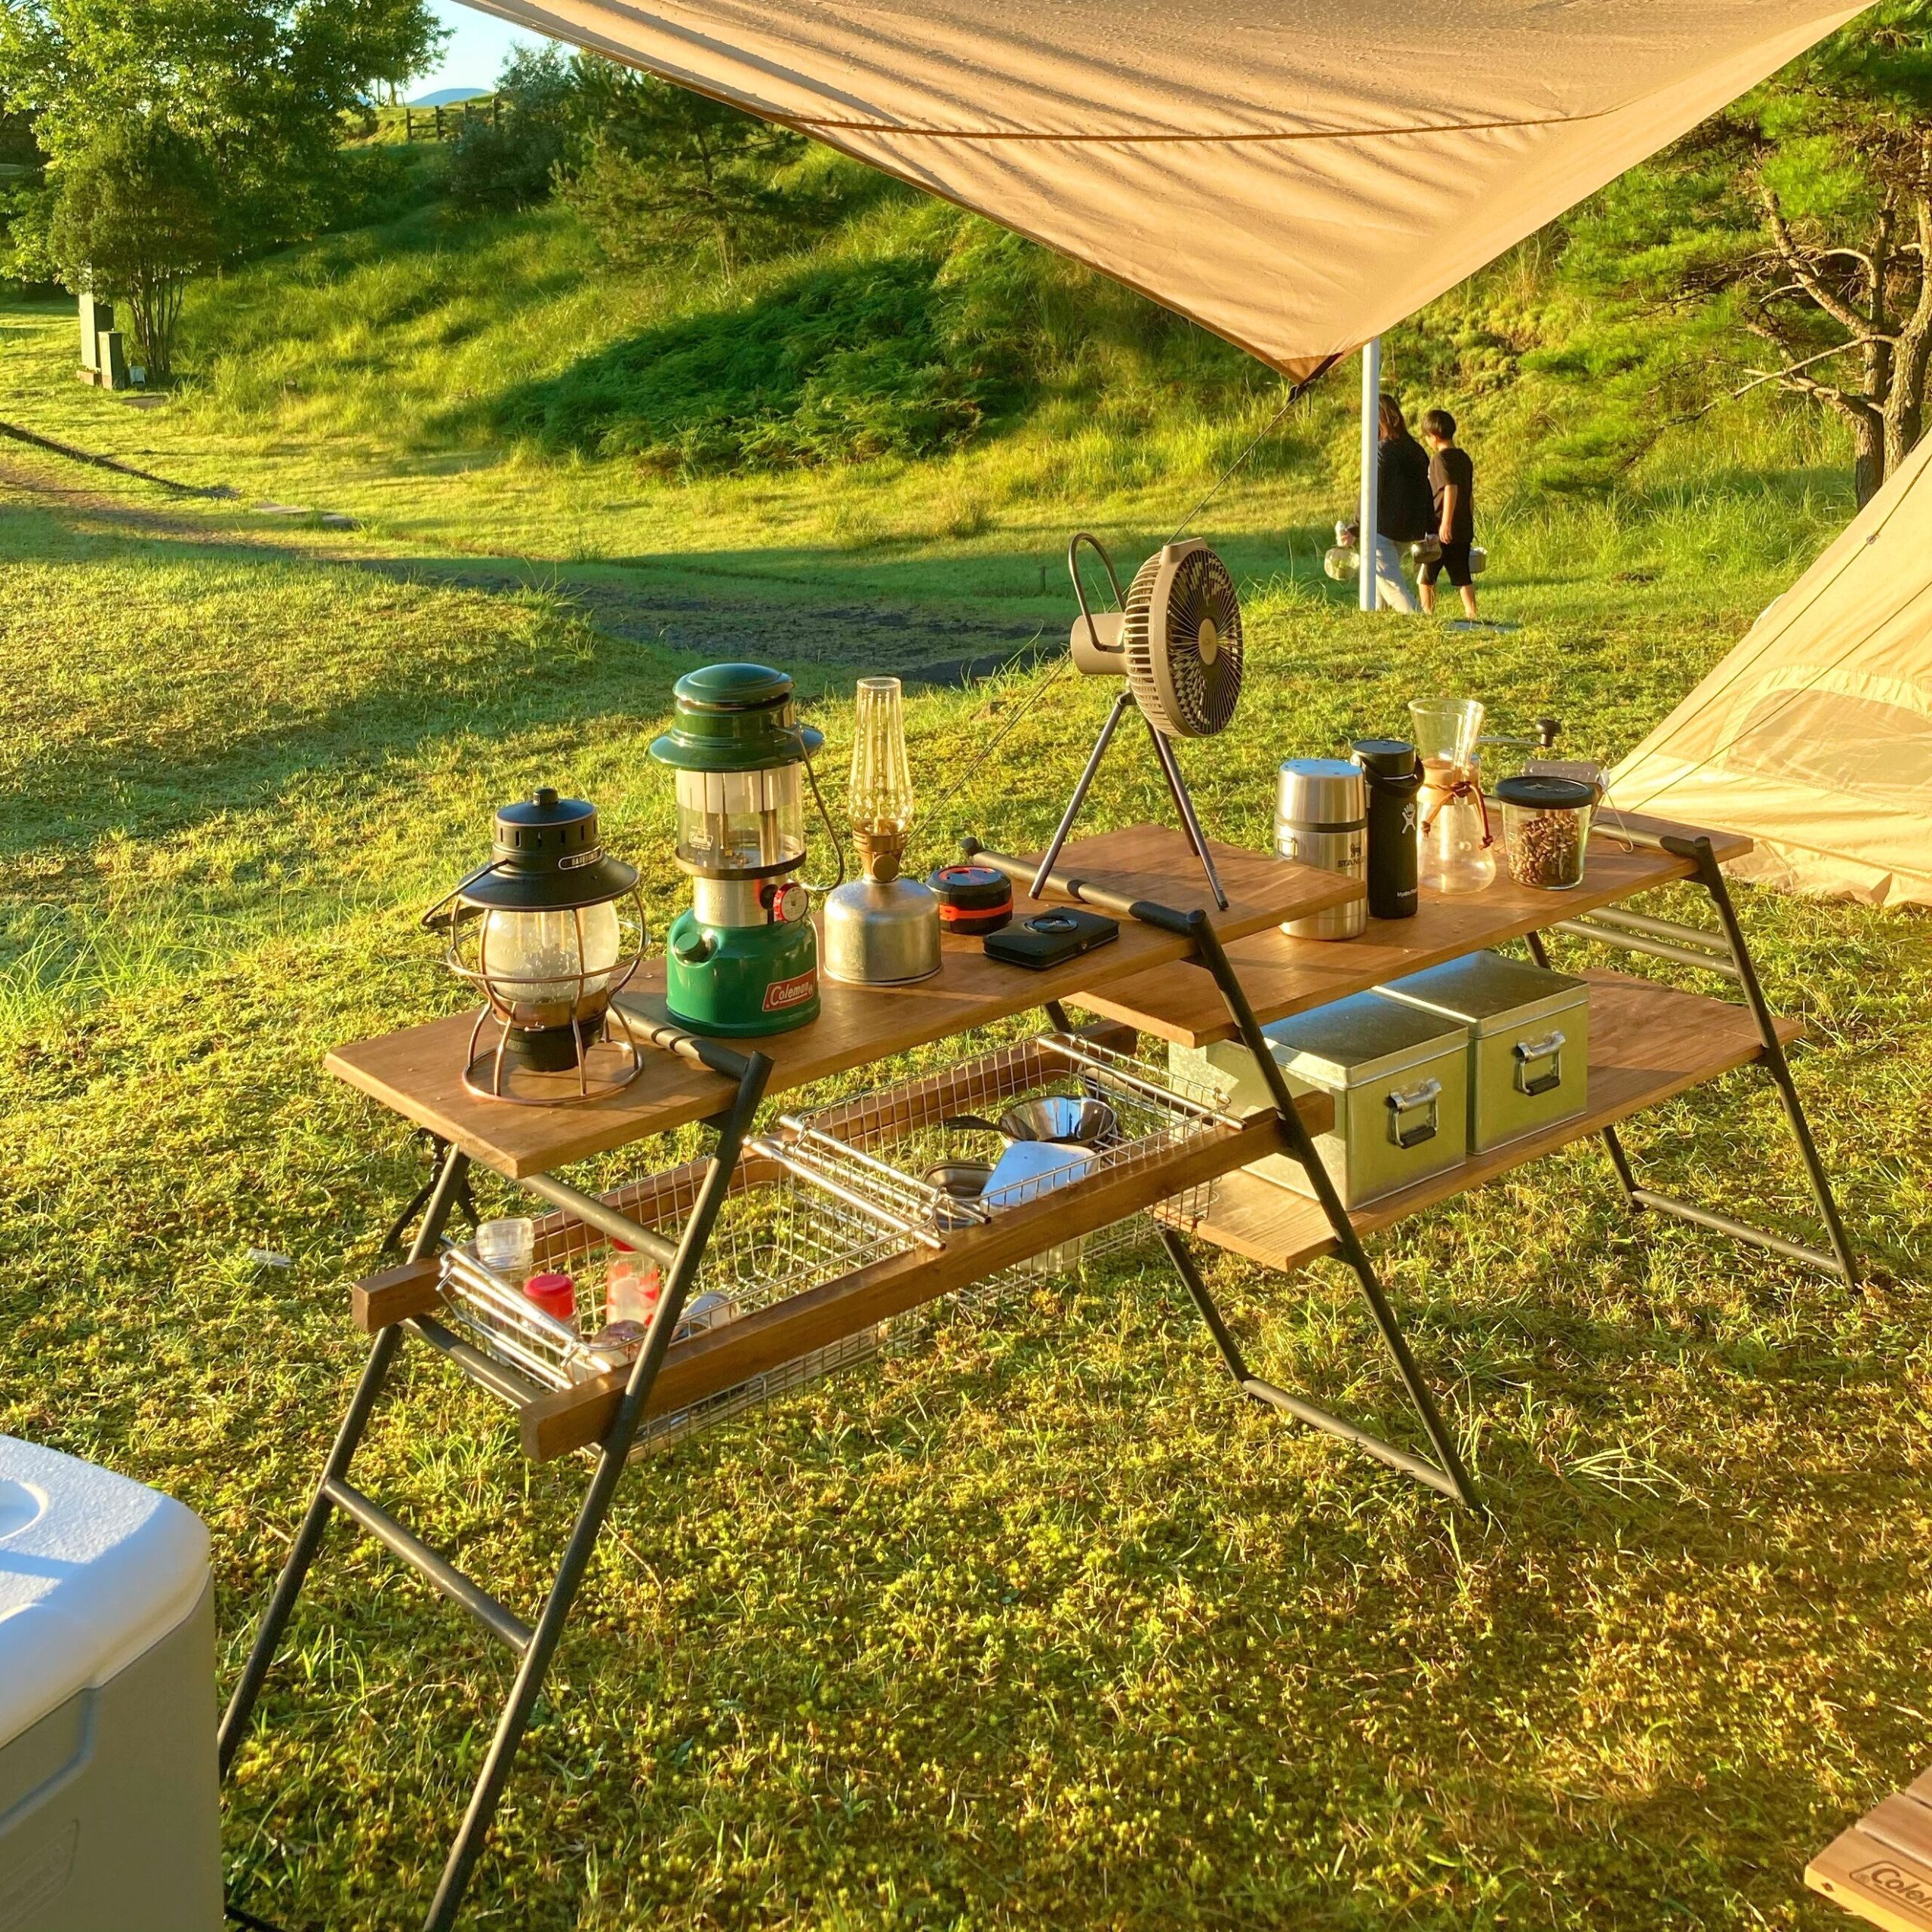 朝露に濡れたタープの下にキャンプ道具を並べているDODテキーラキッチンレッグ